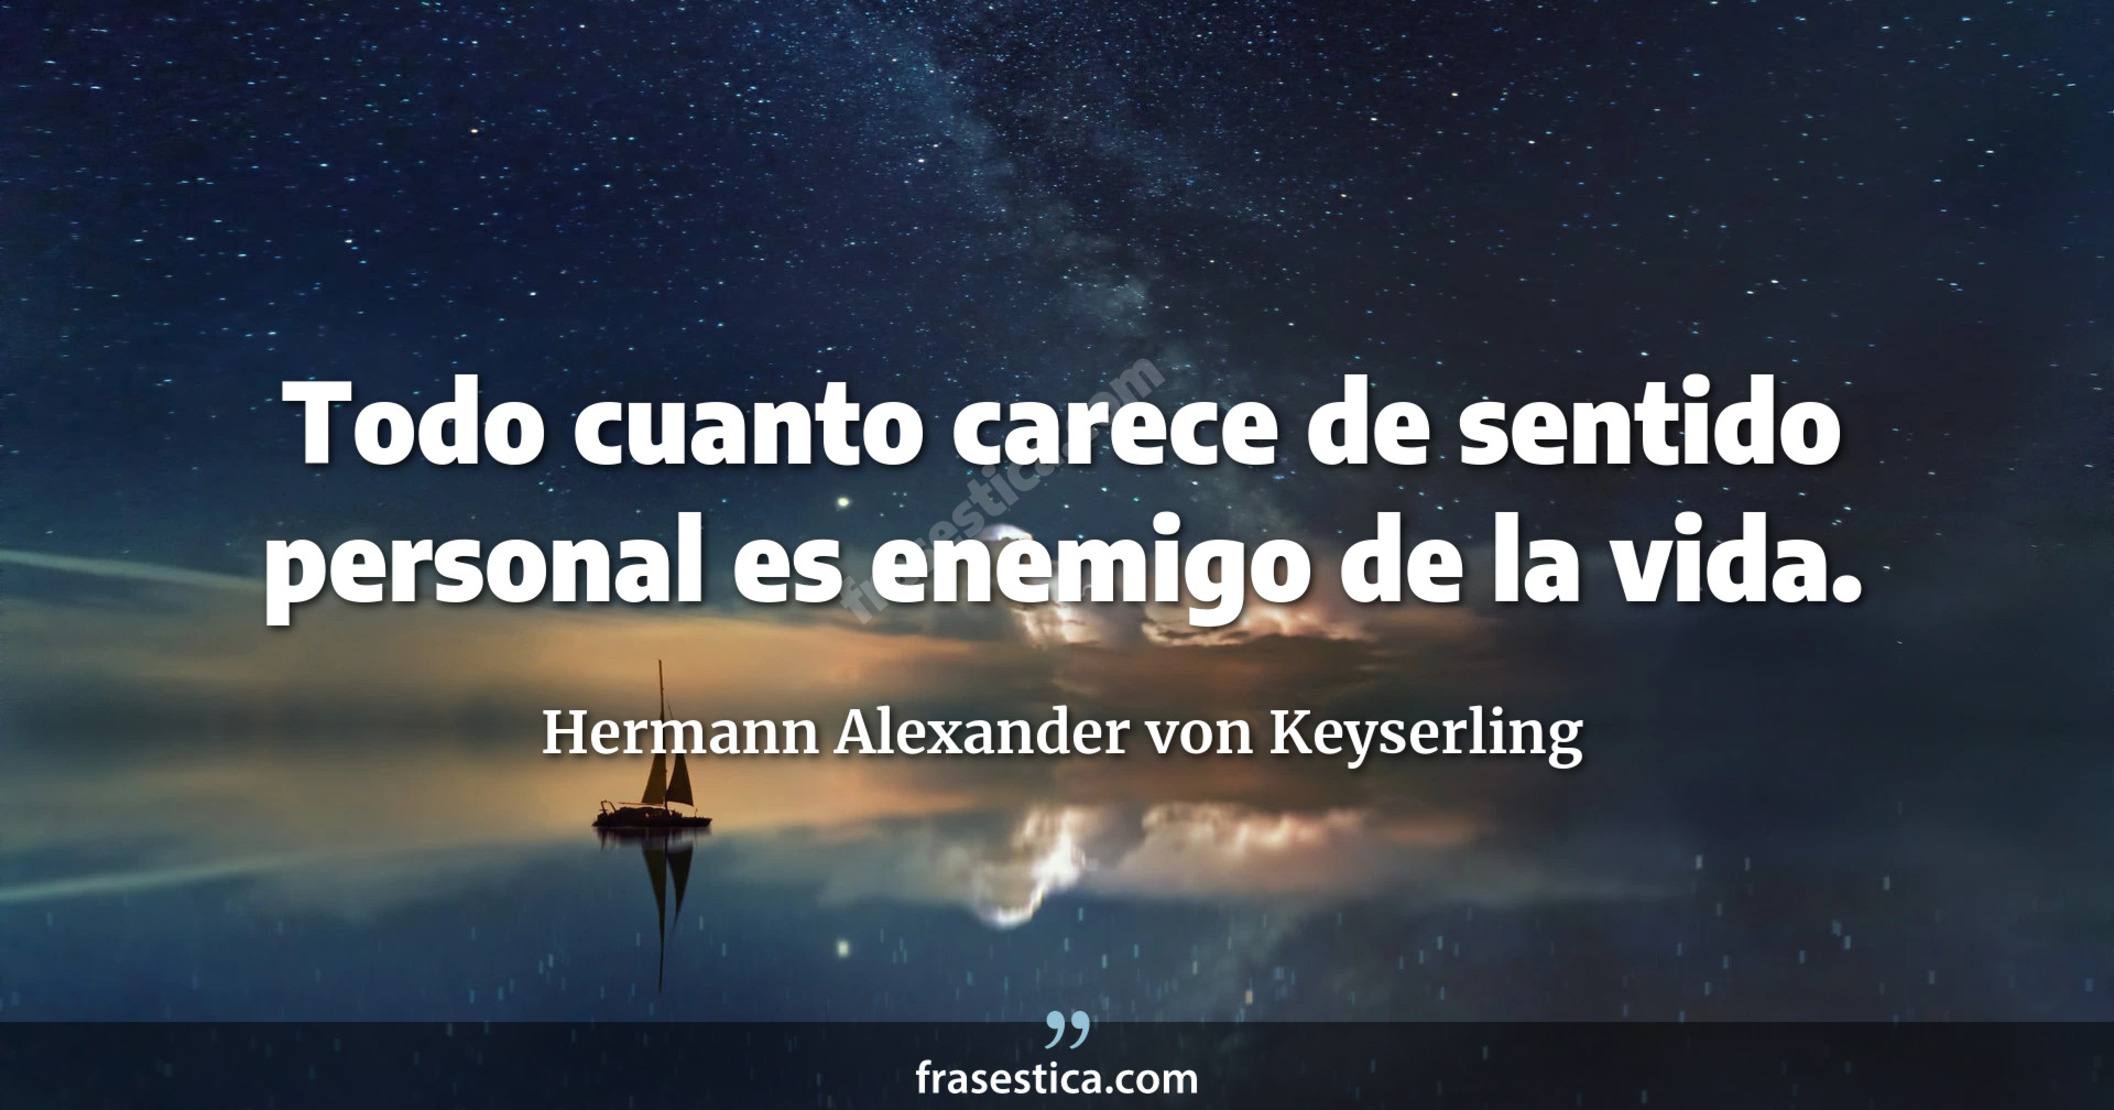 Todo cuanto carece de sentido personal es enemigo de la vida. - Hermann Alexander von Keyserling